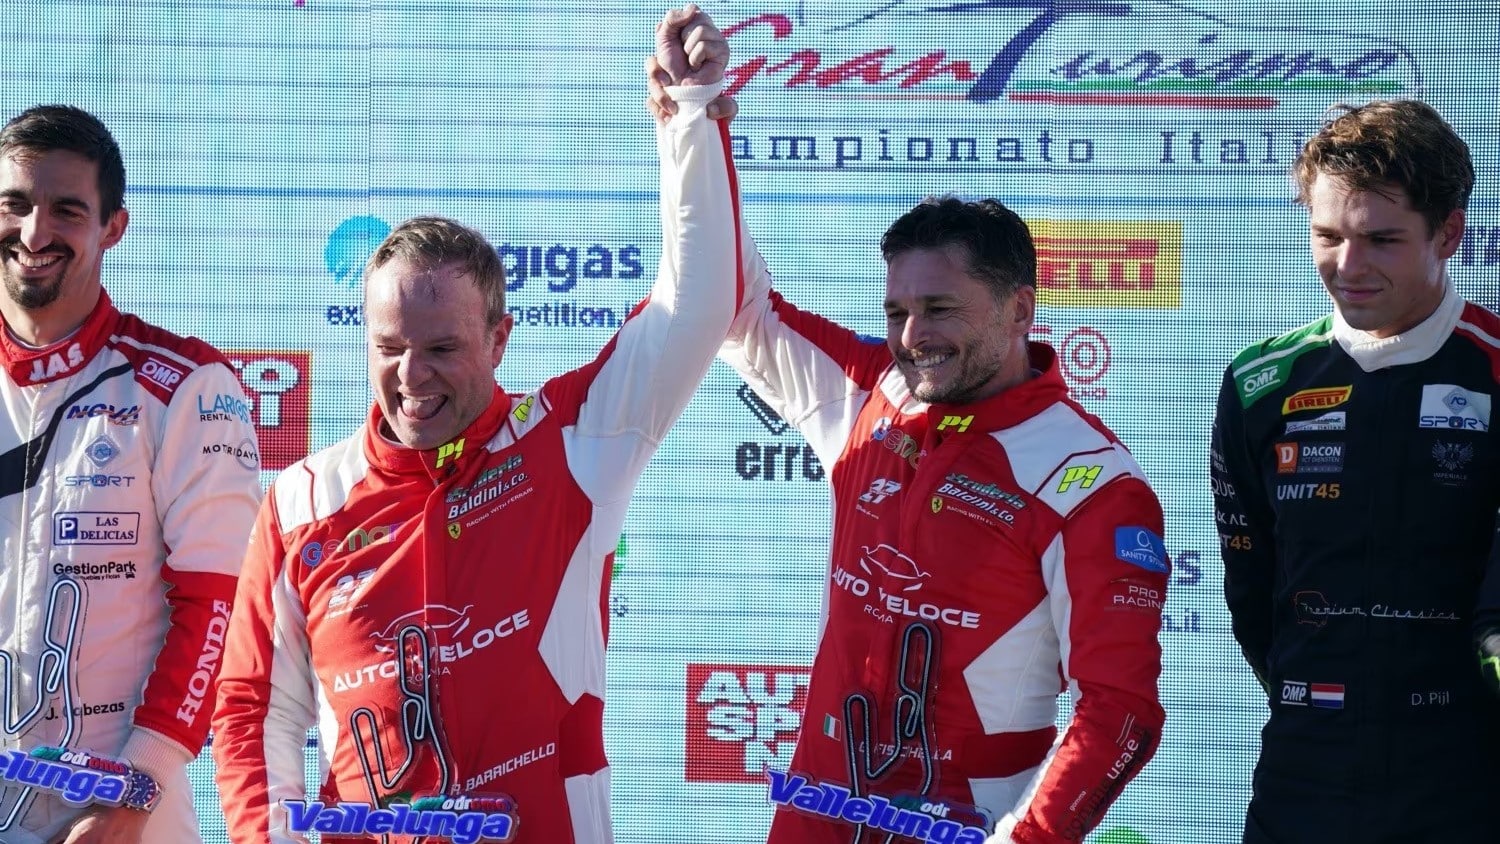 Rubens Barrichello torna a vincere in Ferrari dopo 18 anni [VIDEO]